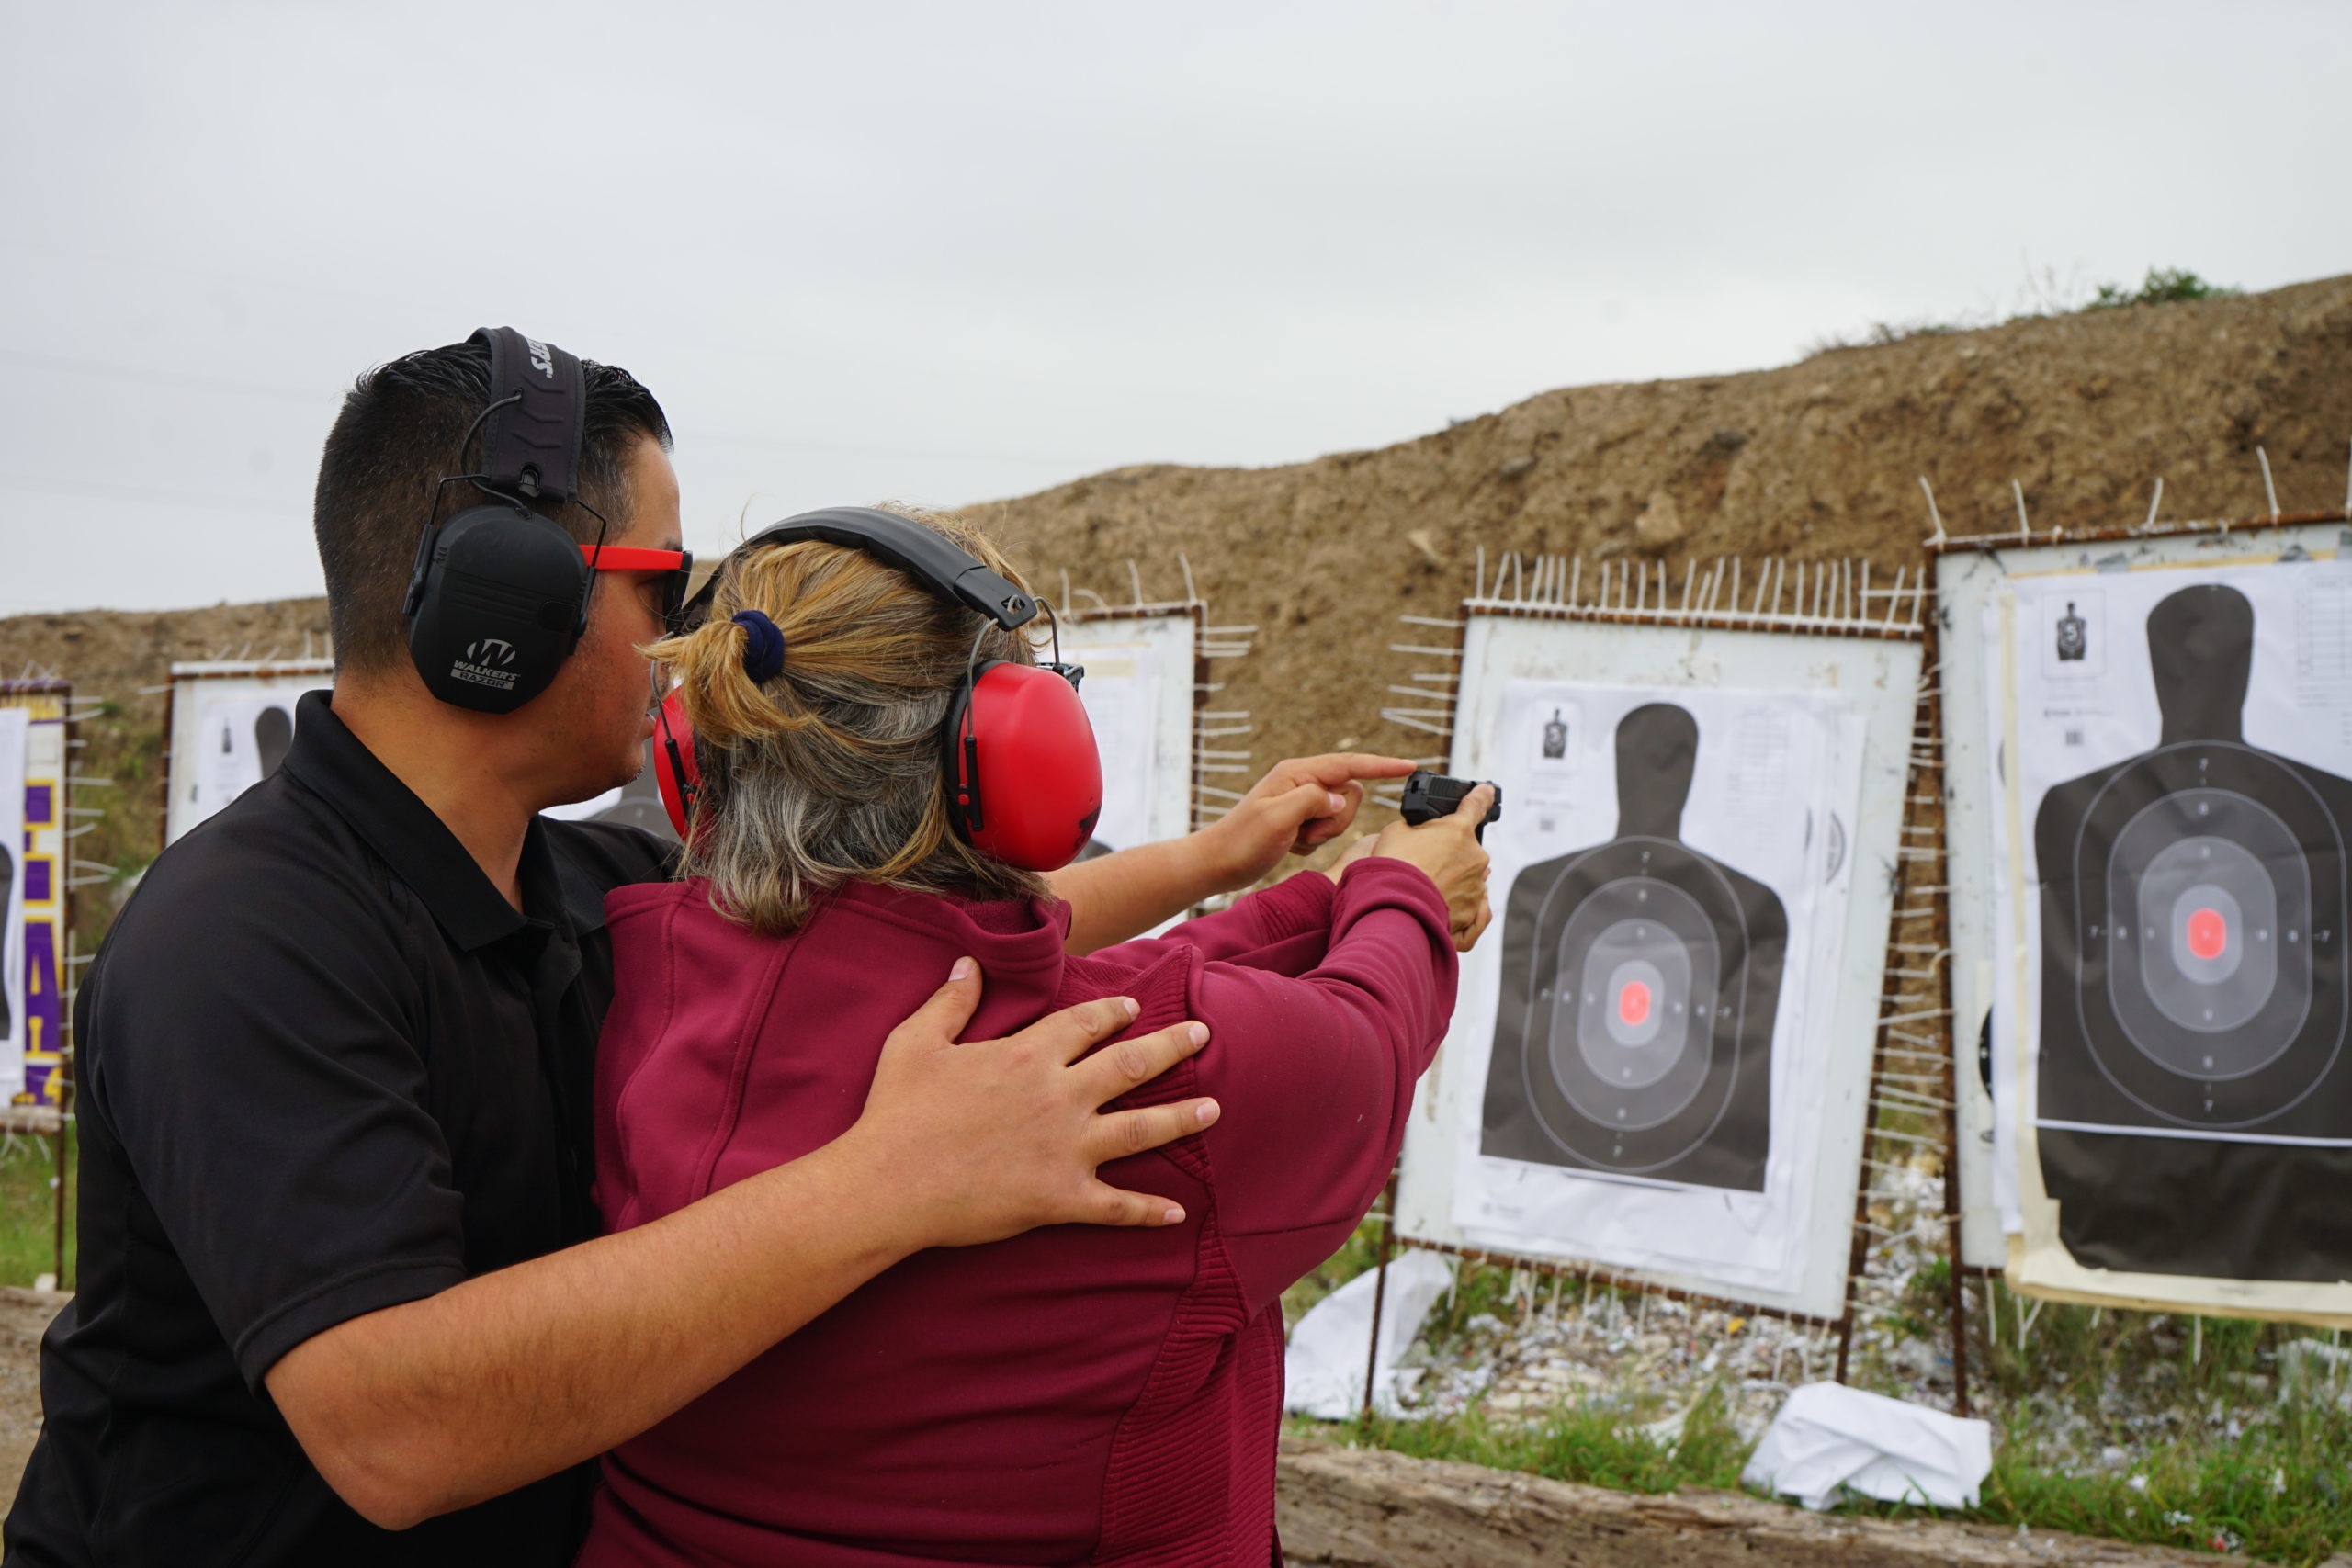 Reportaje desde Texas: por qué aumenta la posesión de armas entre latinos